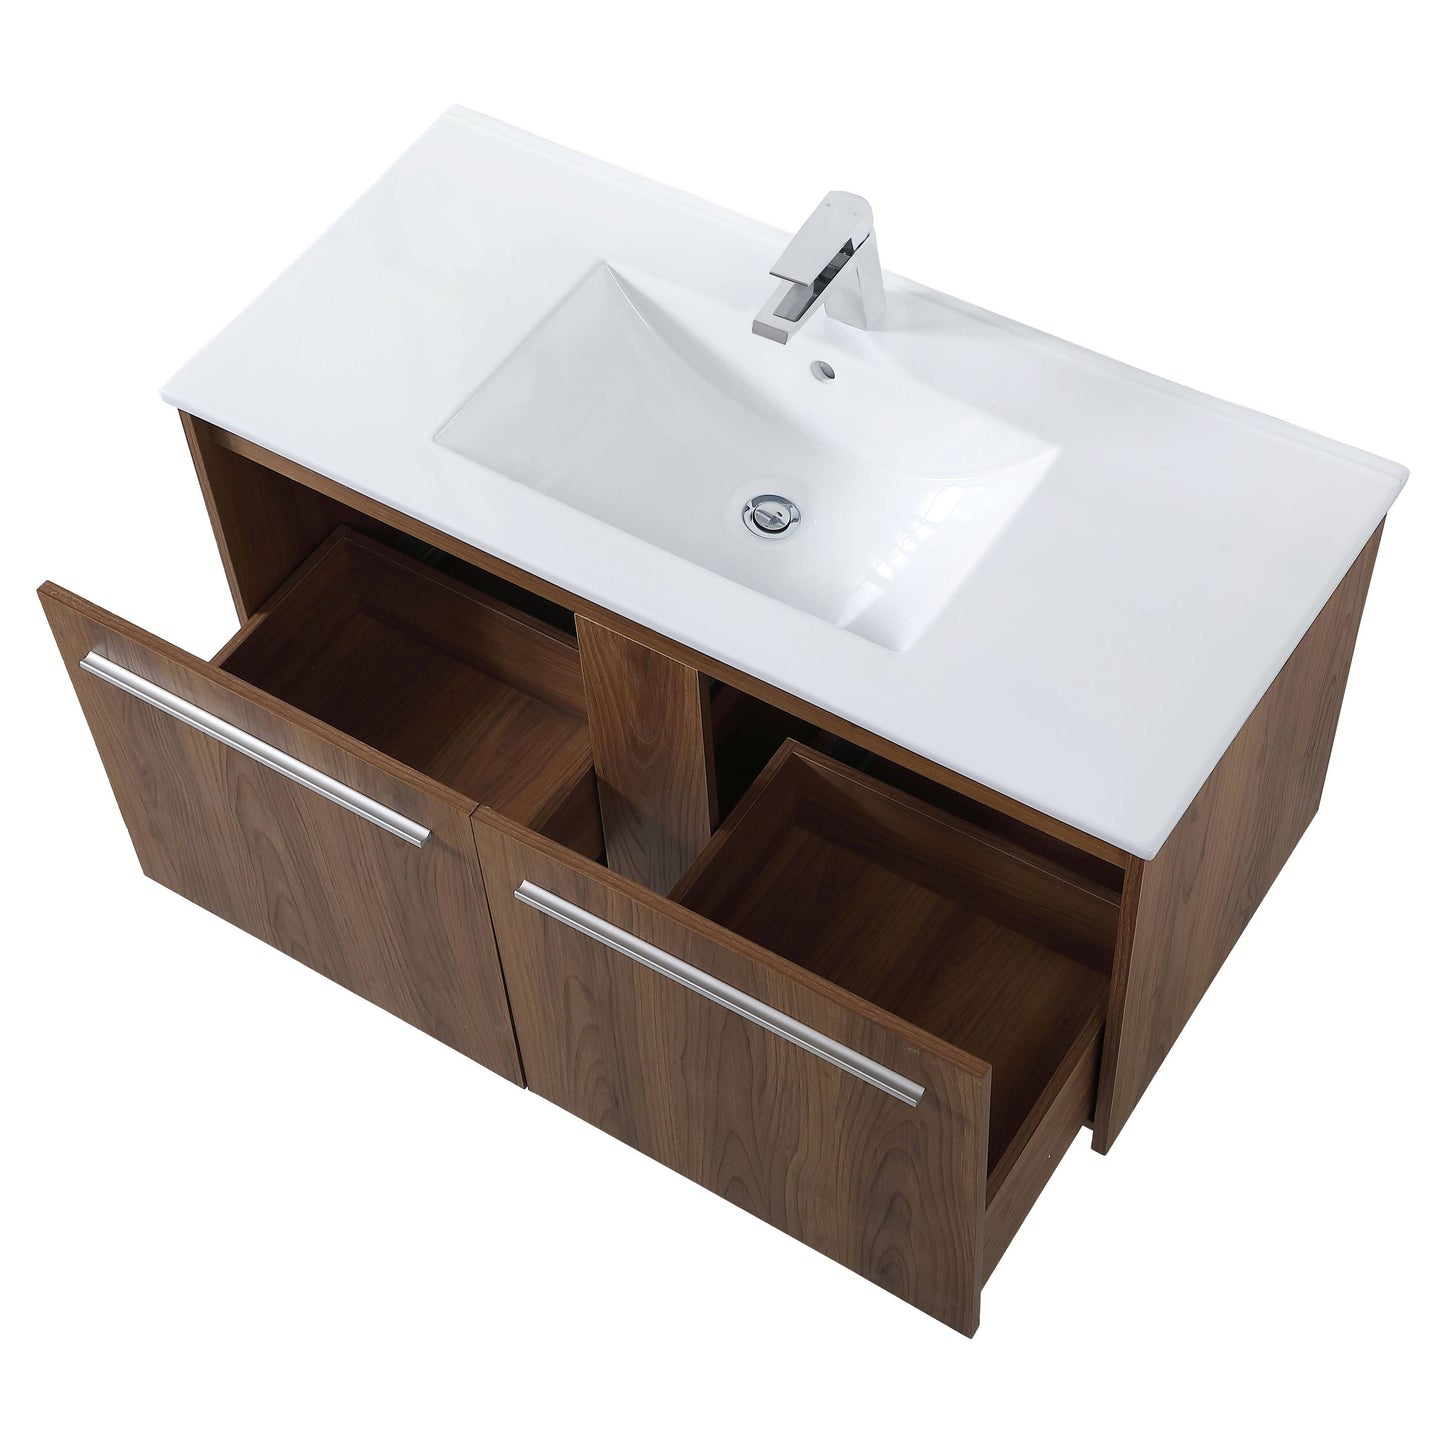 VF45040WB 40" Single Bathroom Floating Vanity in Walnut Brown